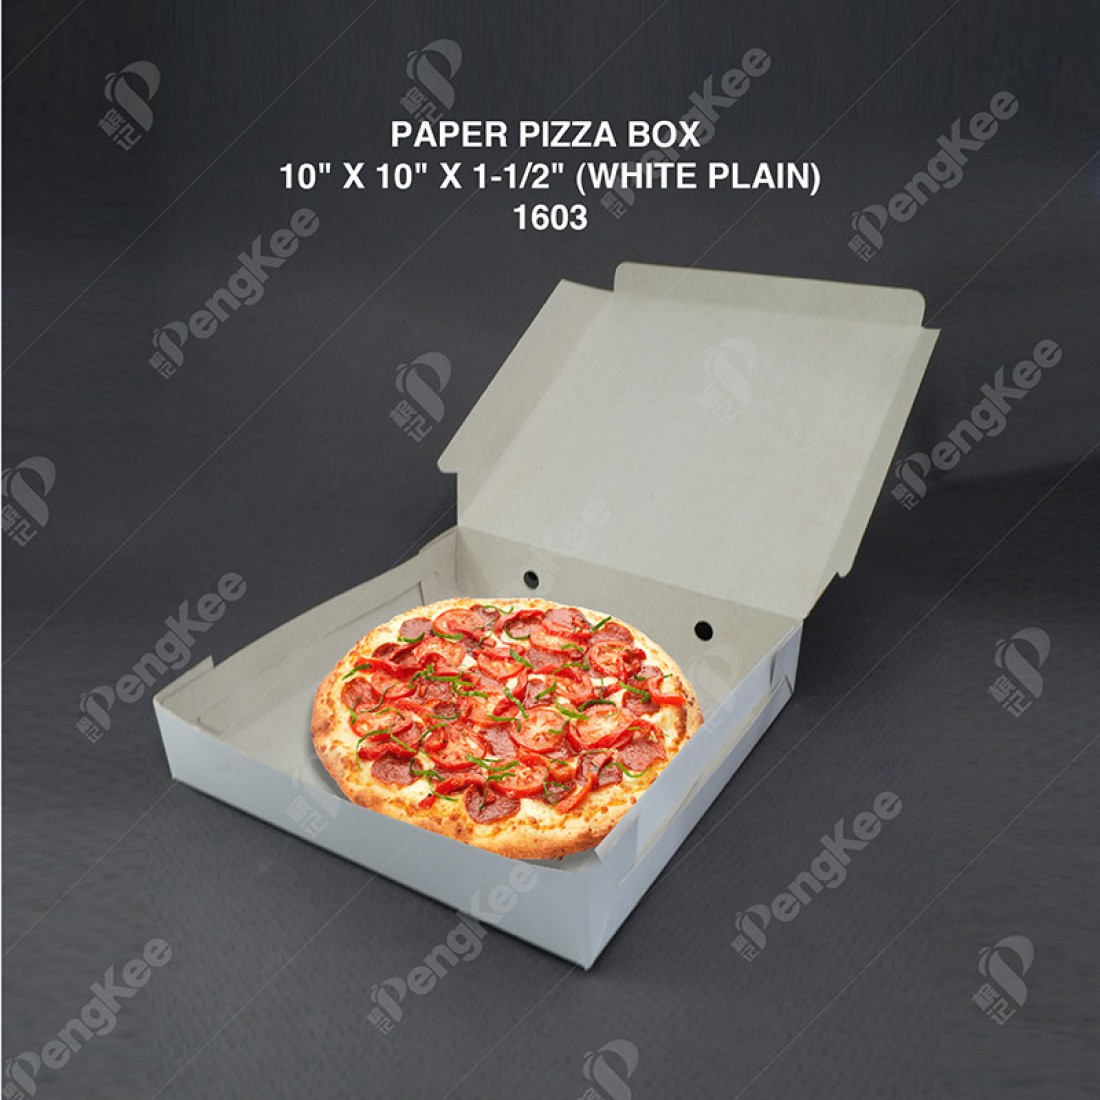 PAPER PIZZA BOX 10" X 10" X 1-1/2" (WHITE PLAIN) (100'S/PKT)